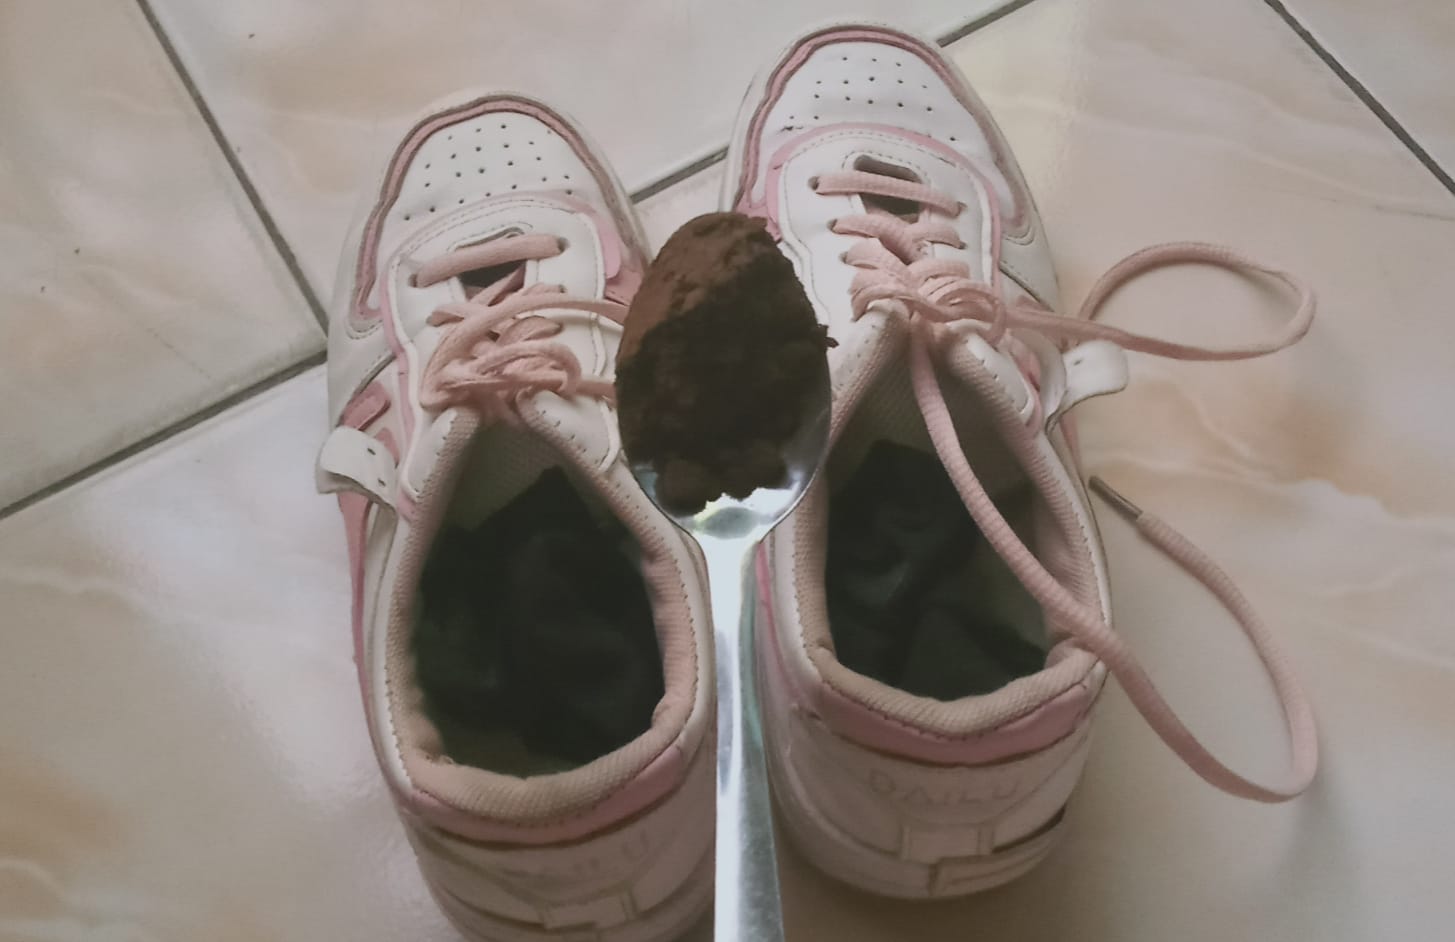 Taruh Aja Bubuk Kopi Kering di Sepatu, Bau Tak Sedap Dijamin Hilang